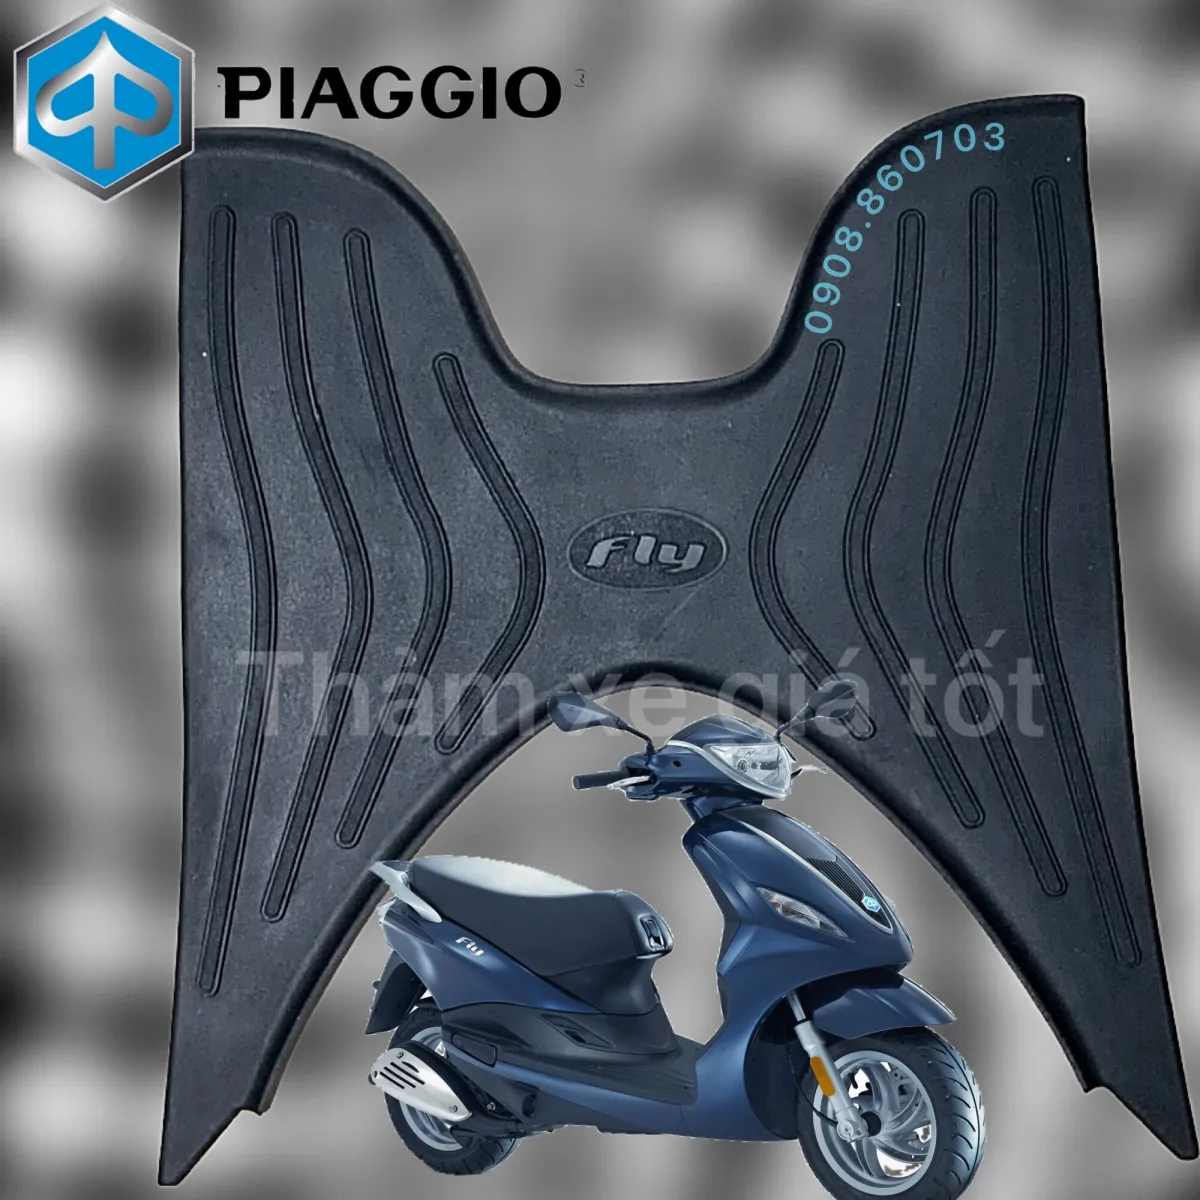 Xe Piaggio Fly  Hút hồn phái đẹp  Chuyện xe